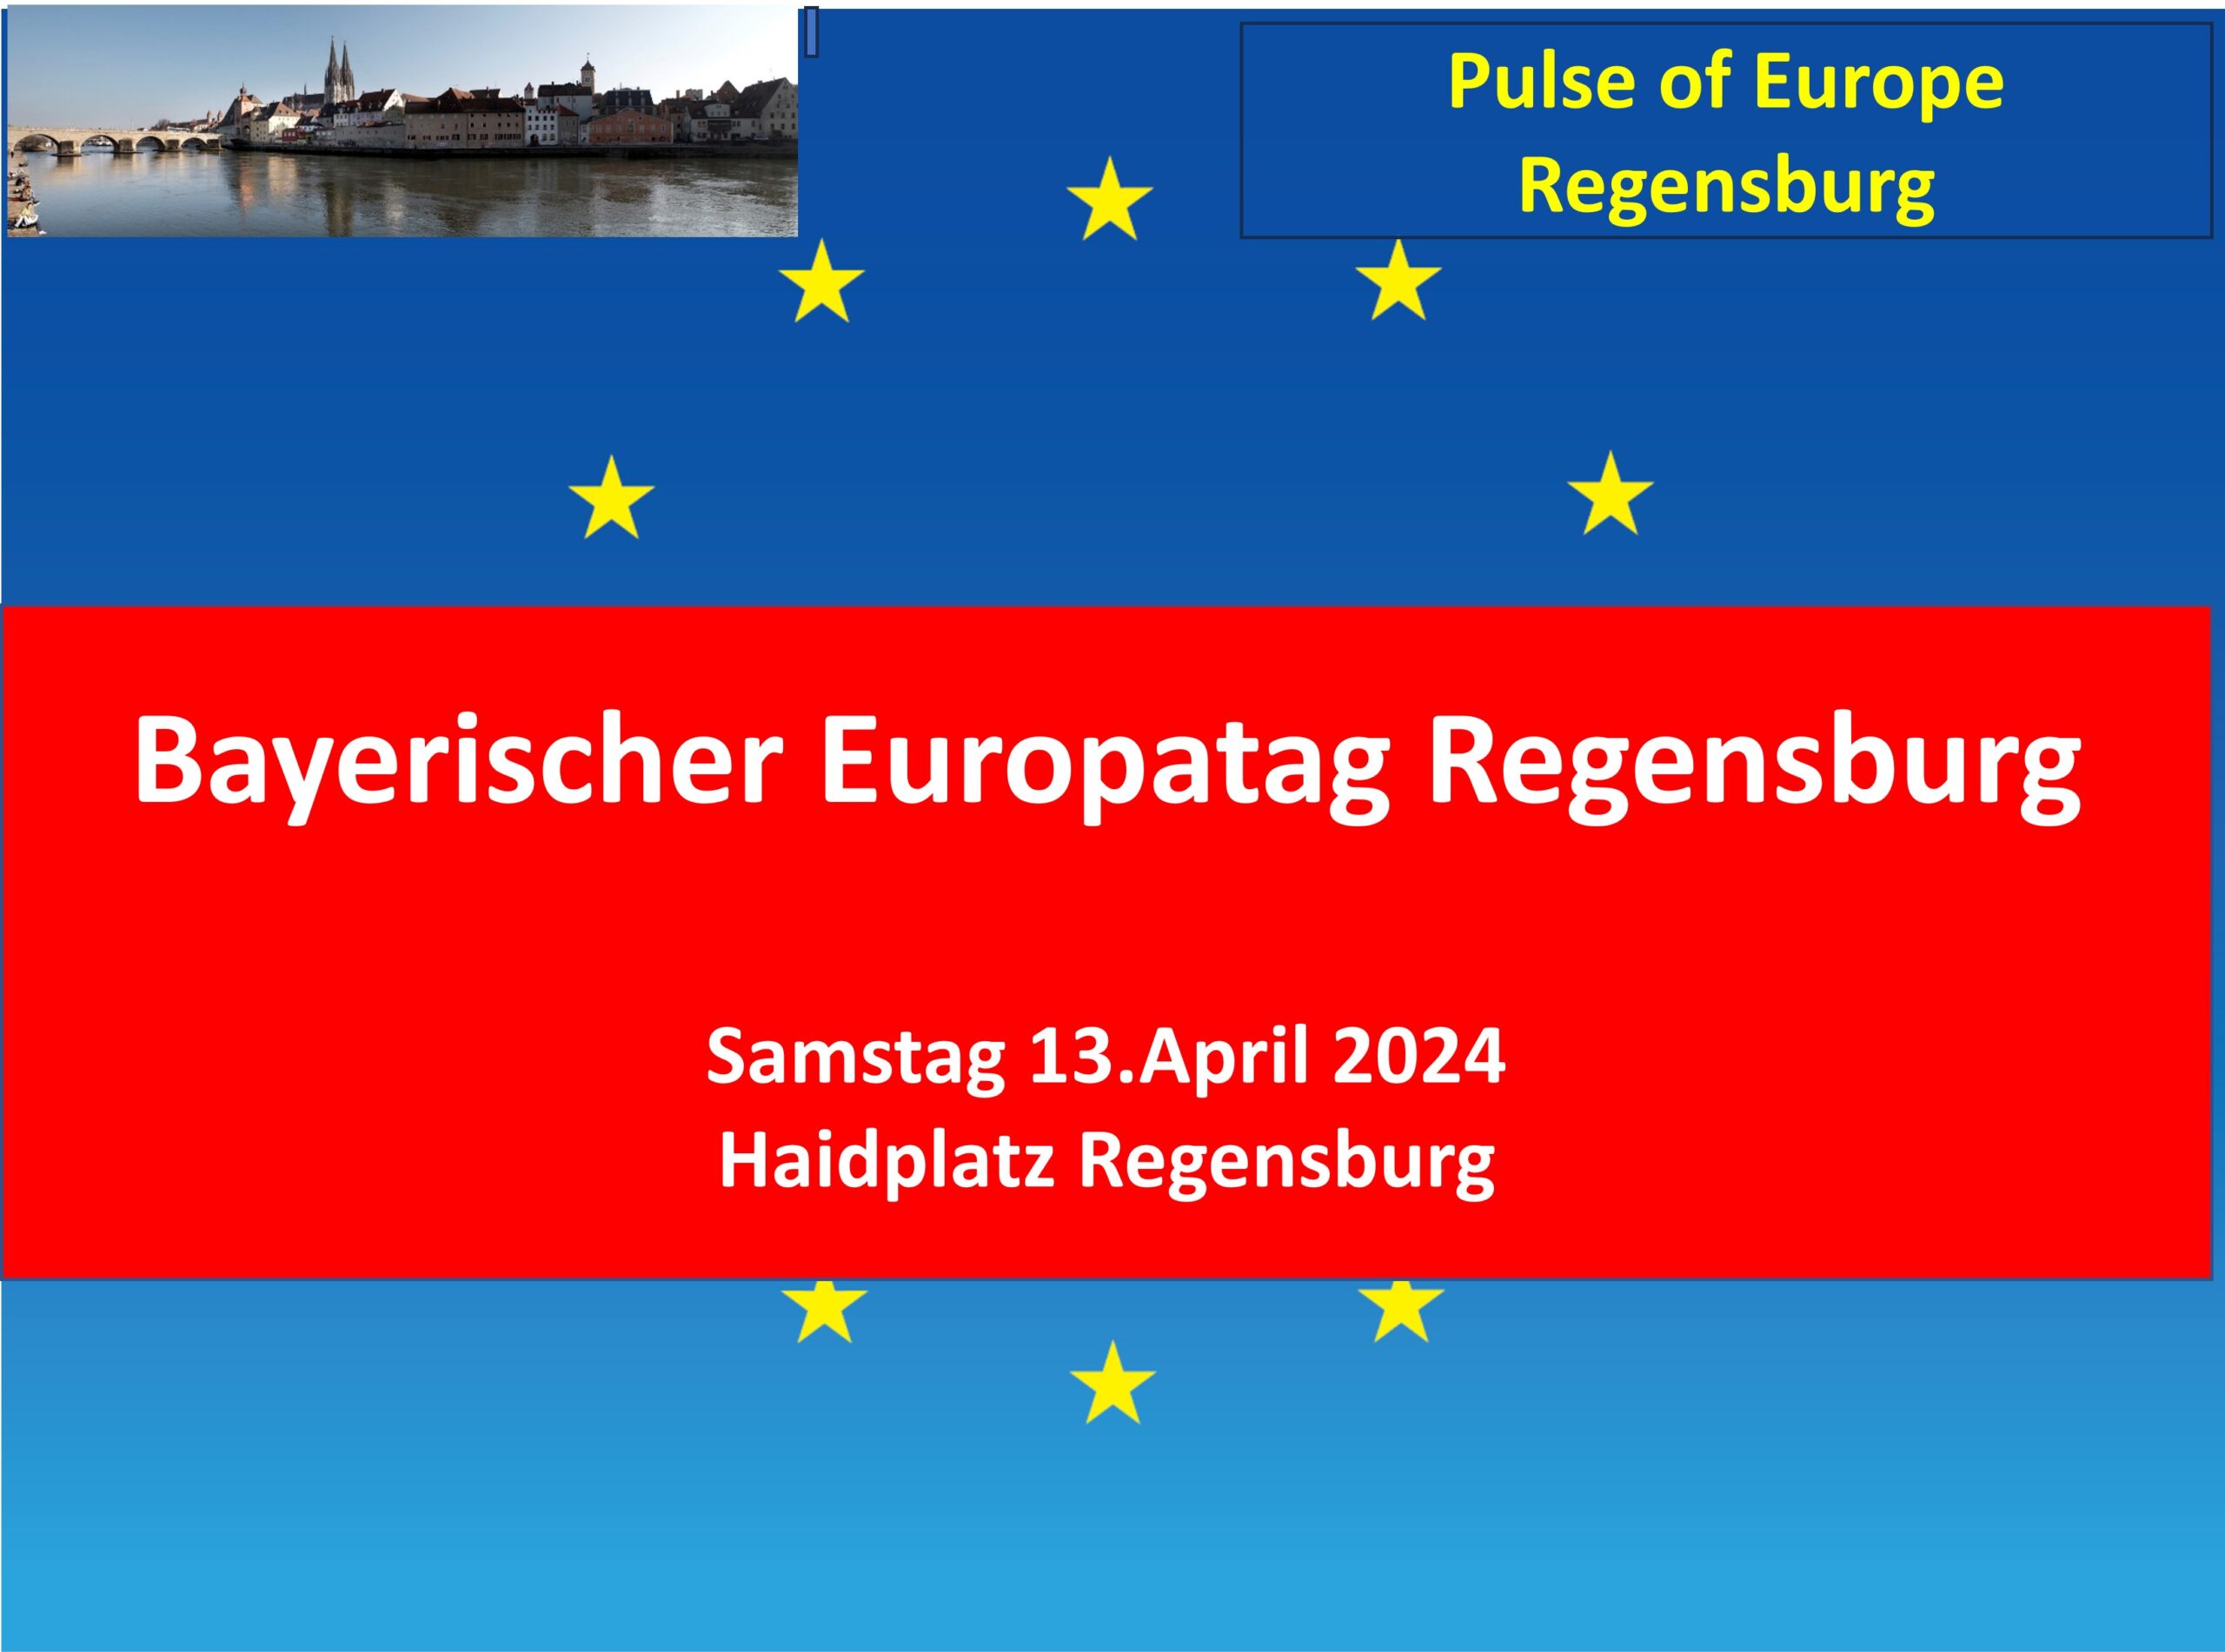 Am Samstag, den 13. April, ist Bayerischer Europatag in Regensburg